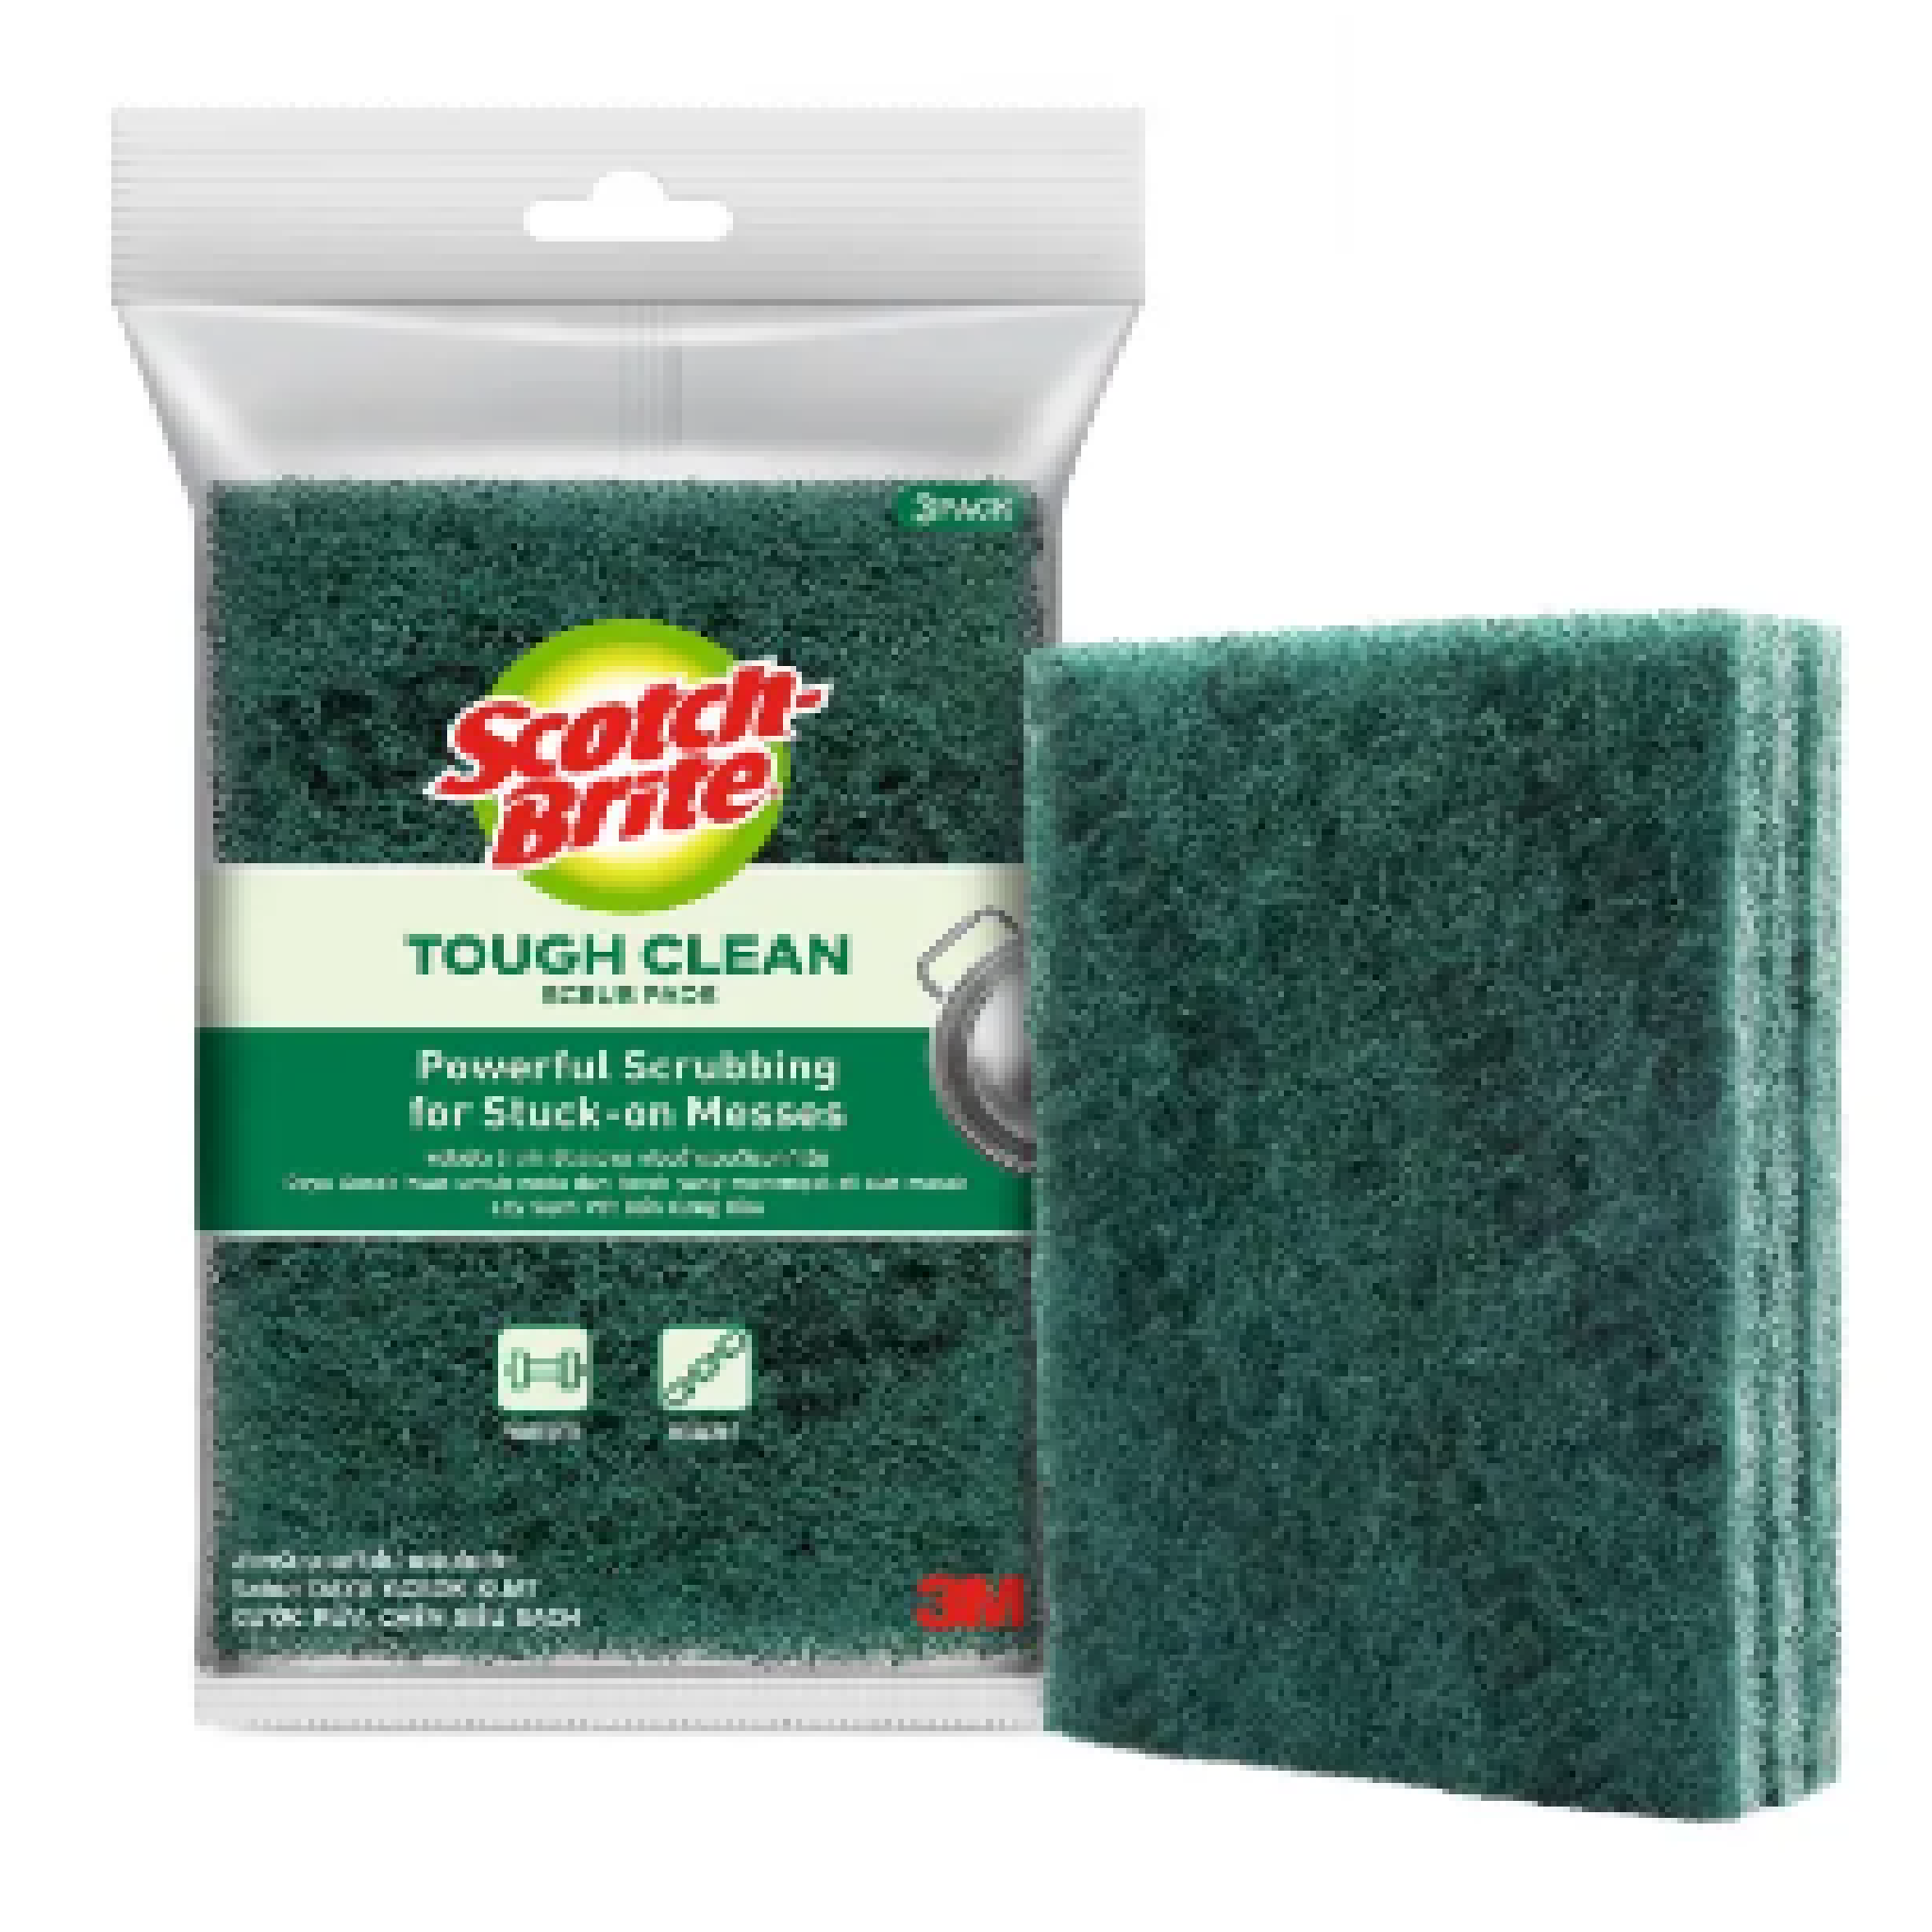 3M ScotchBrite TOUGH CLEAN Scrub Pad 3PC/Pack GREEN